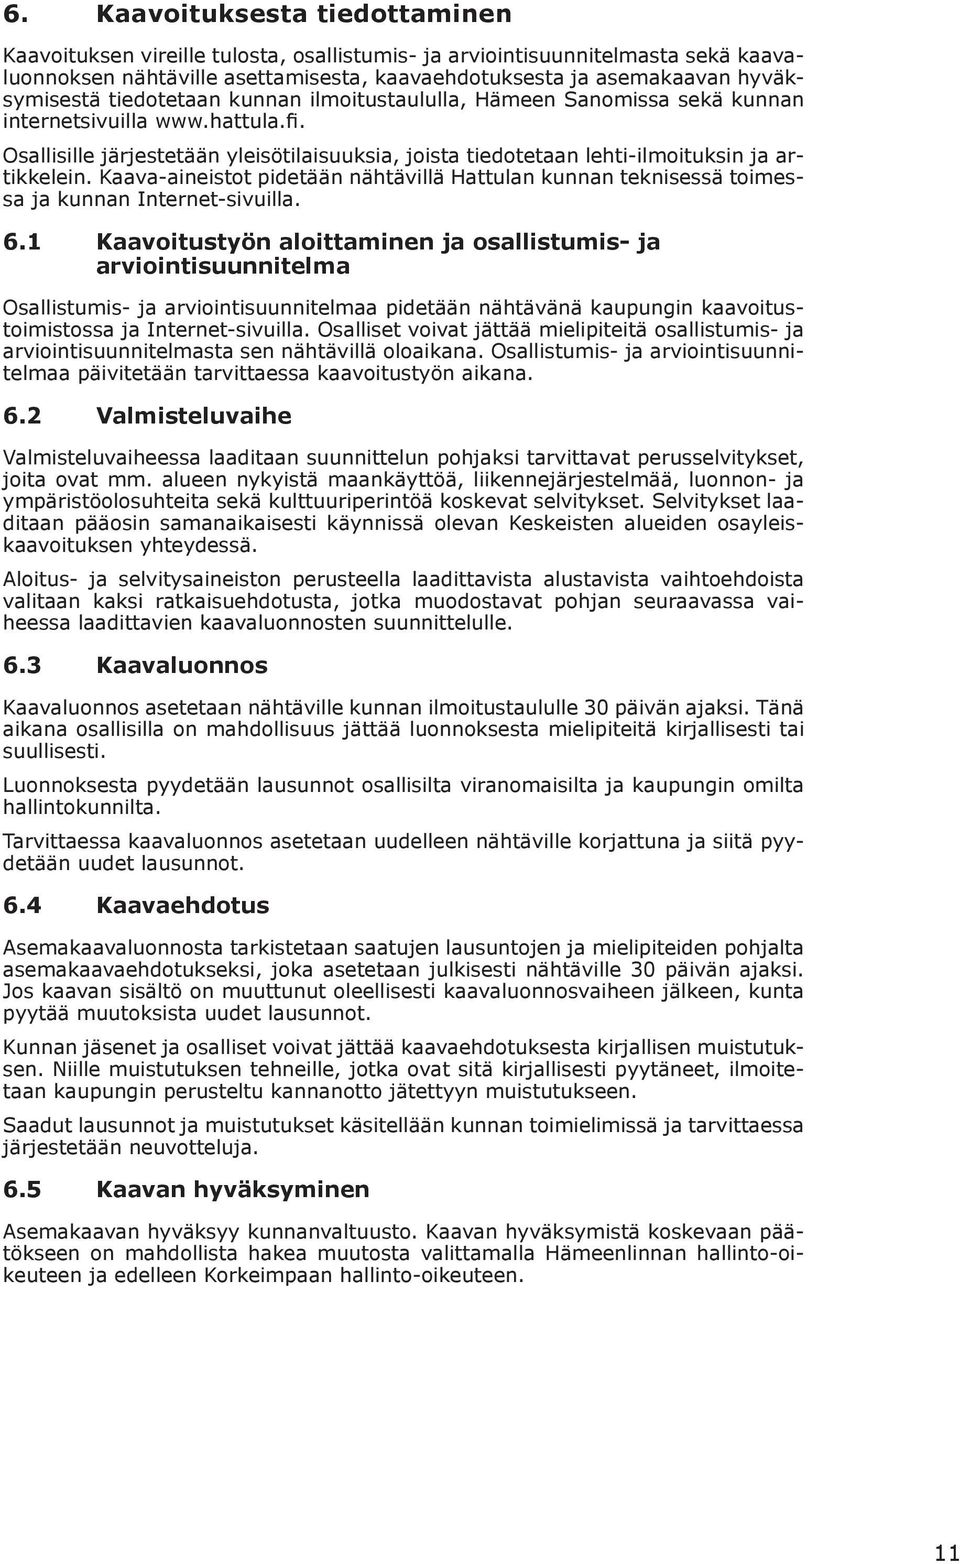 Kaava-aineistt pidetään nähtävillä Hattulan kunnan teknisessä timessa ja kunnan Internet-sivuilla. 6.